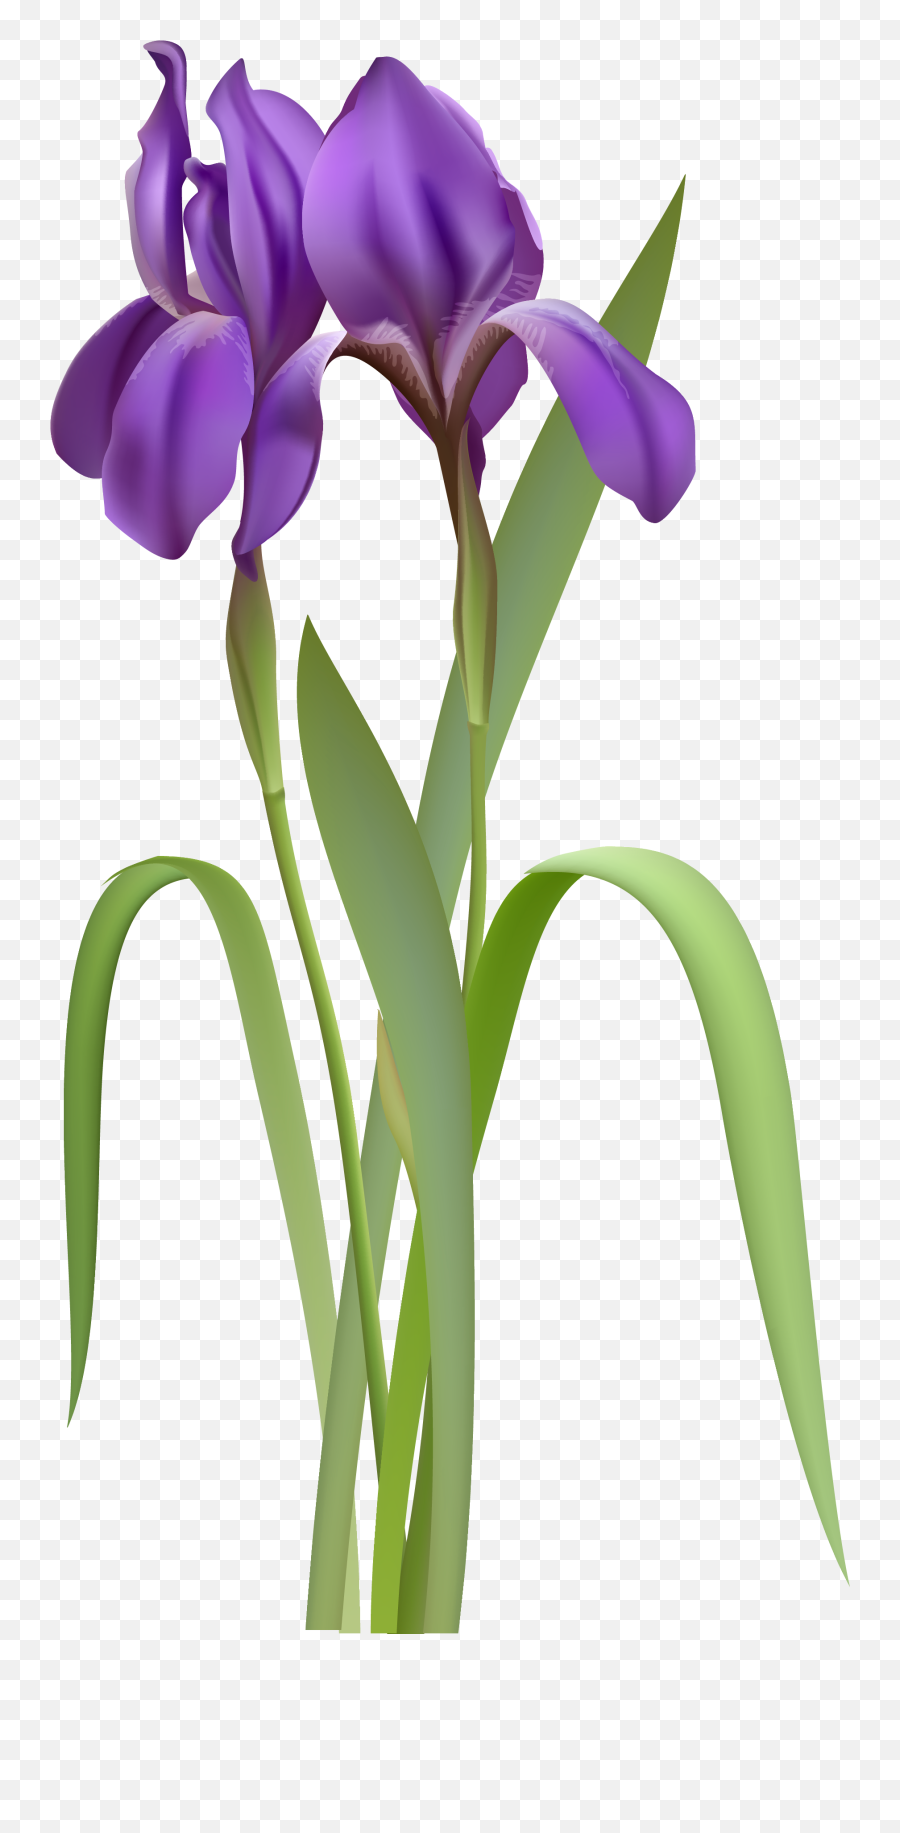 Free Violet Flower Png Download Free Clip Art Free Clip - Iris Flower Clipart Emoji,Violet Flower Emoji